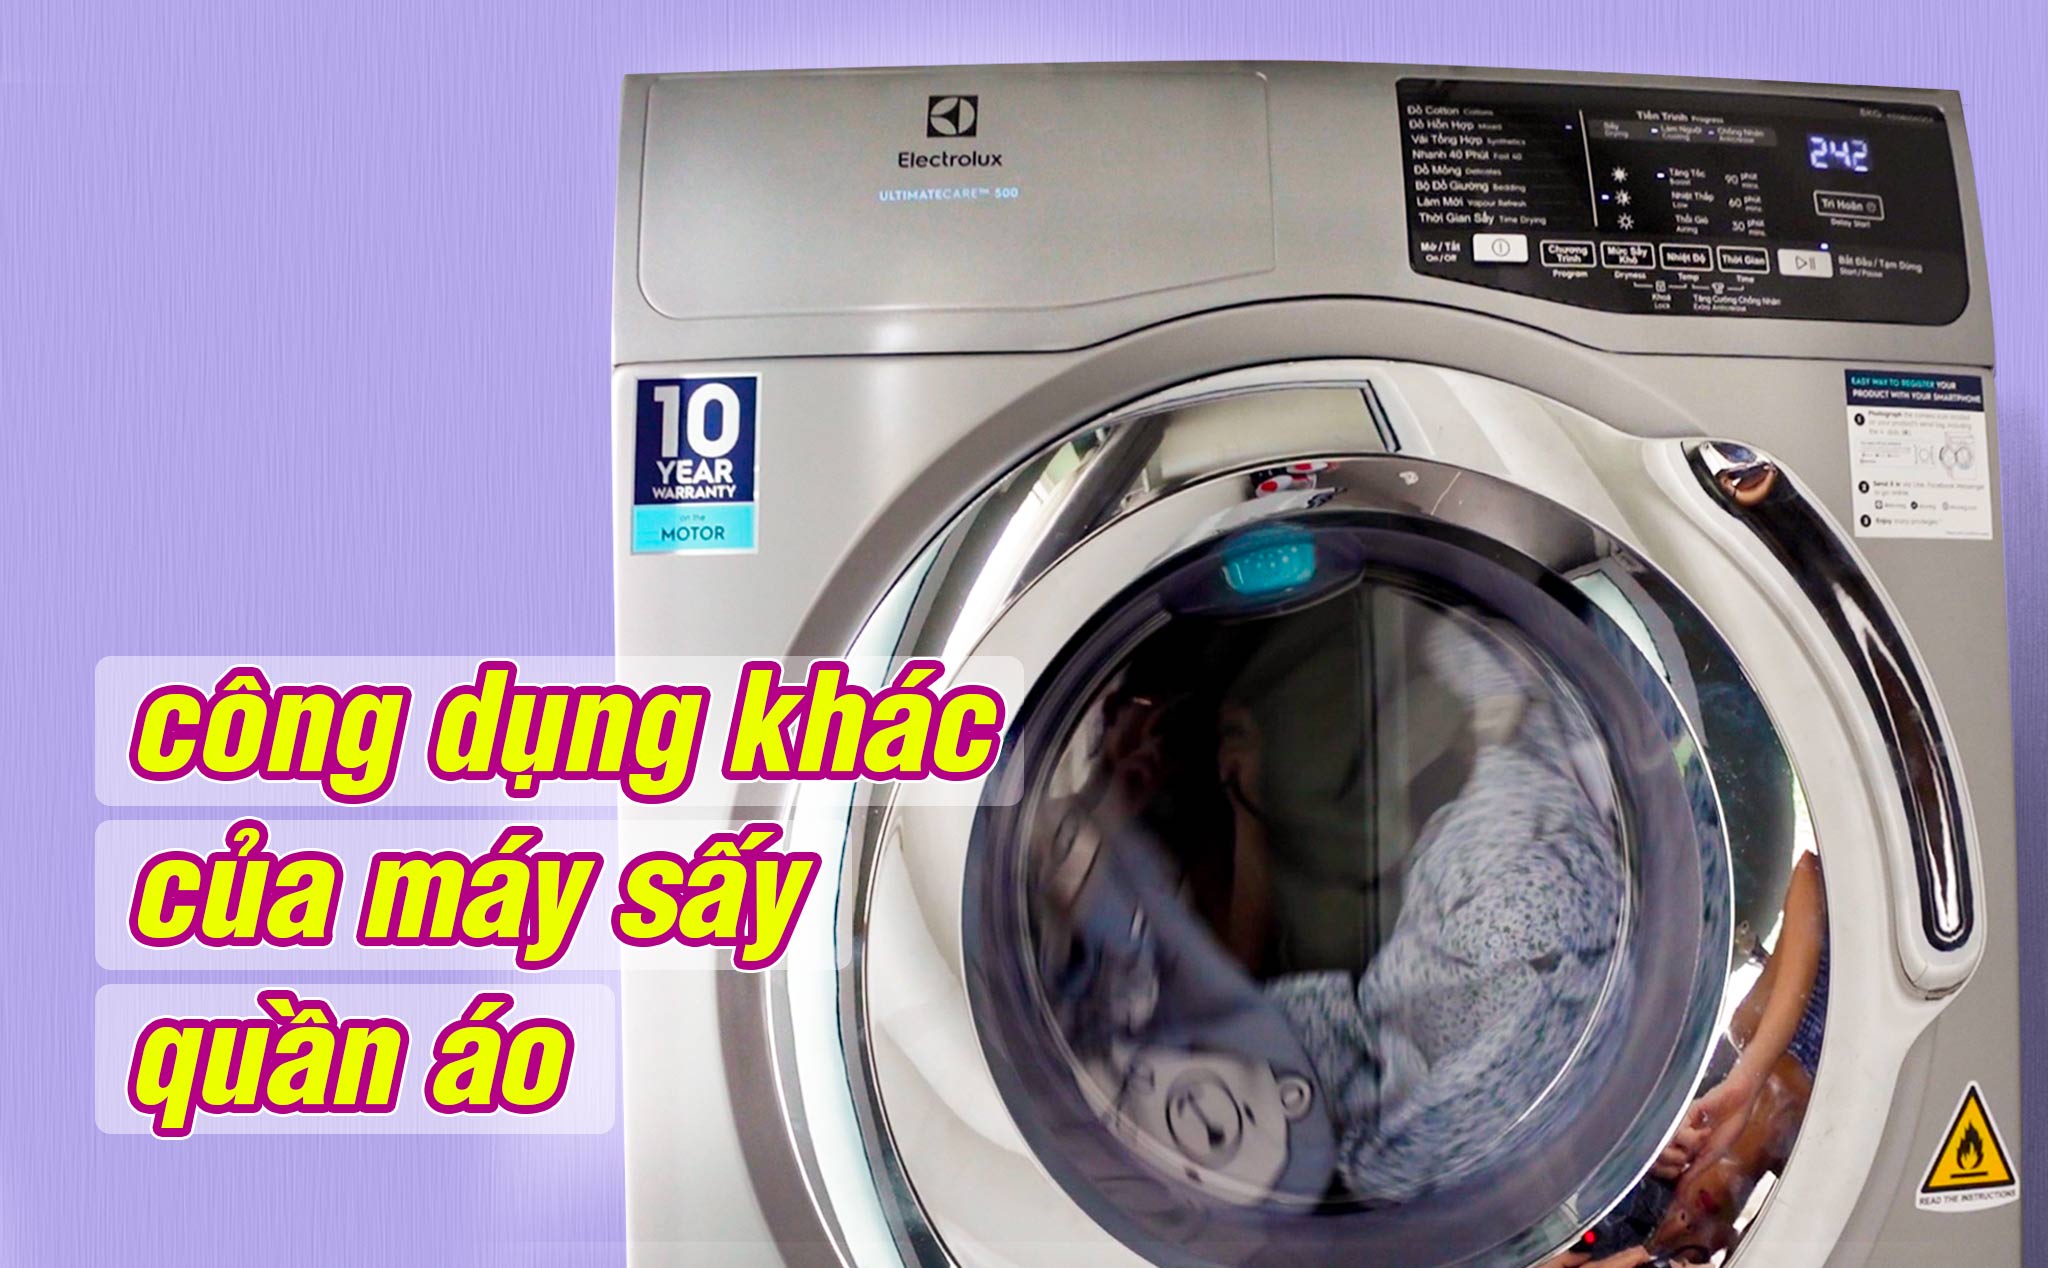 3 công dụng khác của máy sấy quần áo: Ngoài sấy ra thì còn làm được gì nữa?